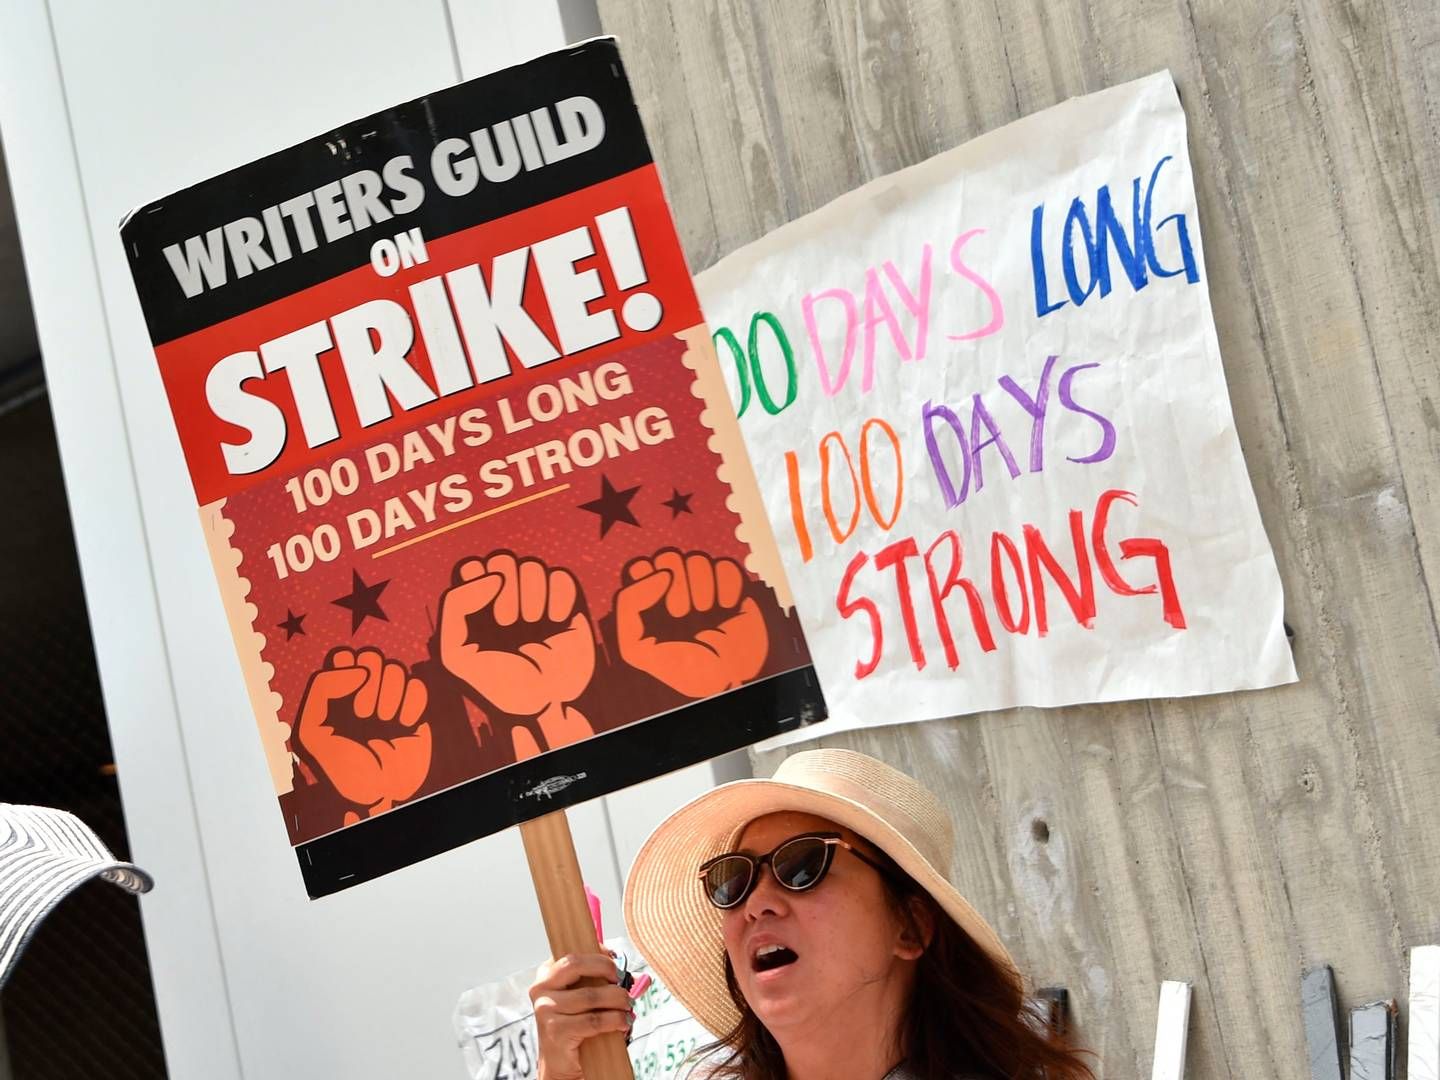 De strejkende Hollywood-forfattere vil evaluere tv- og filmstudiernes modtilbud og vende tilbage med svar senere på ugen. | Foto: Chris Delmas